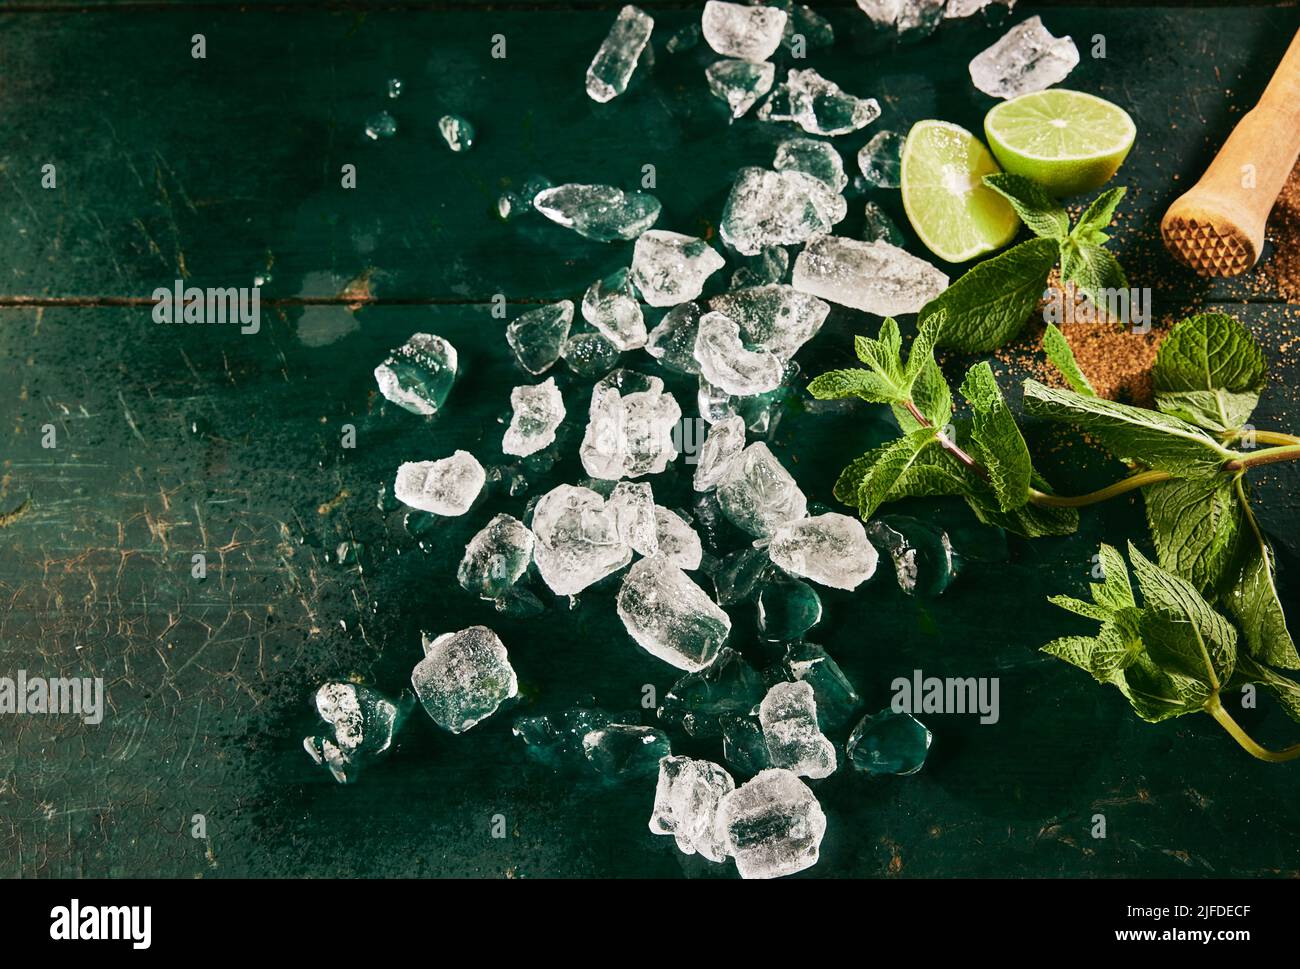 Vista dall'alto degli ingredienti per il cocktail mojito, tra cui un mucchio di cubetti di ghiaccio sparsi su un tavolo shabby con foglie di menta verde e fette di lime fresche Foto Stock